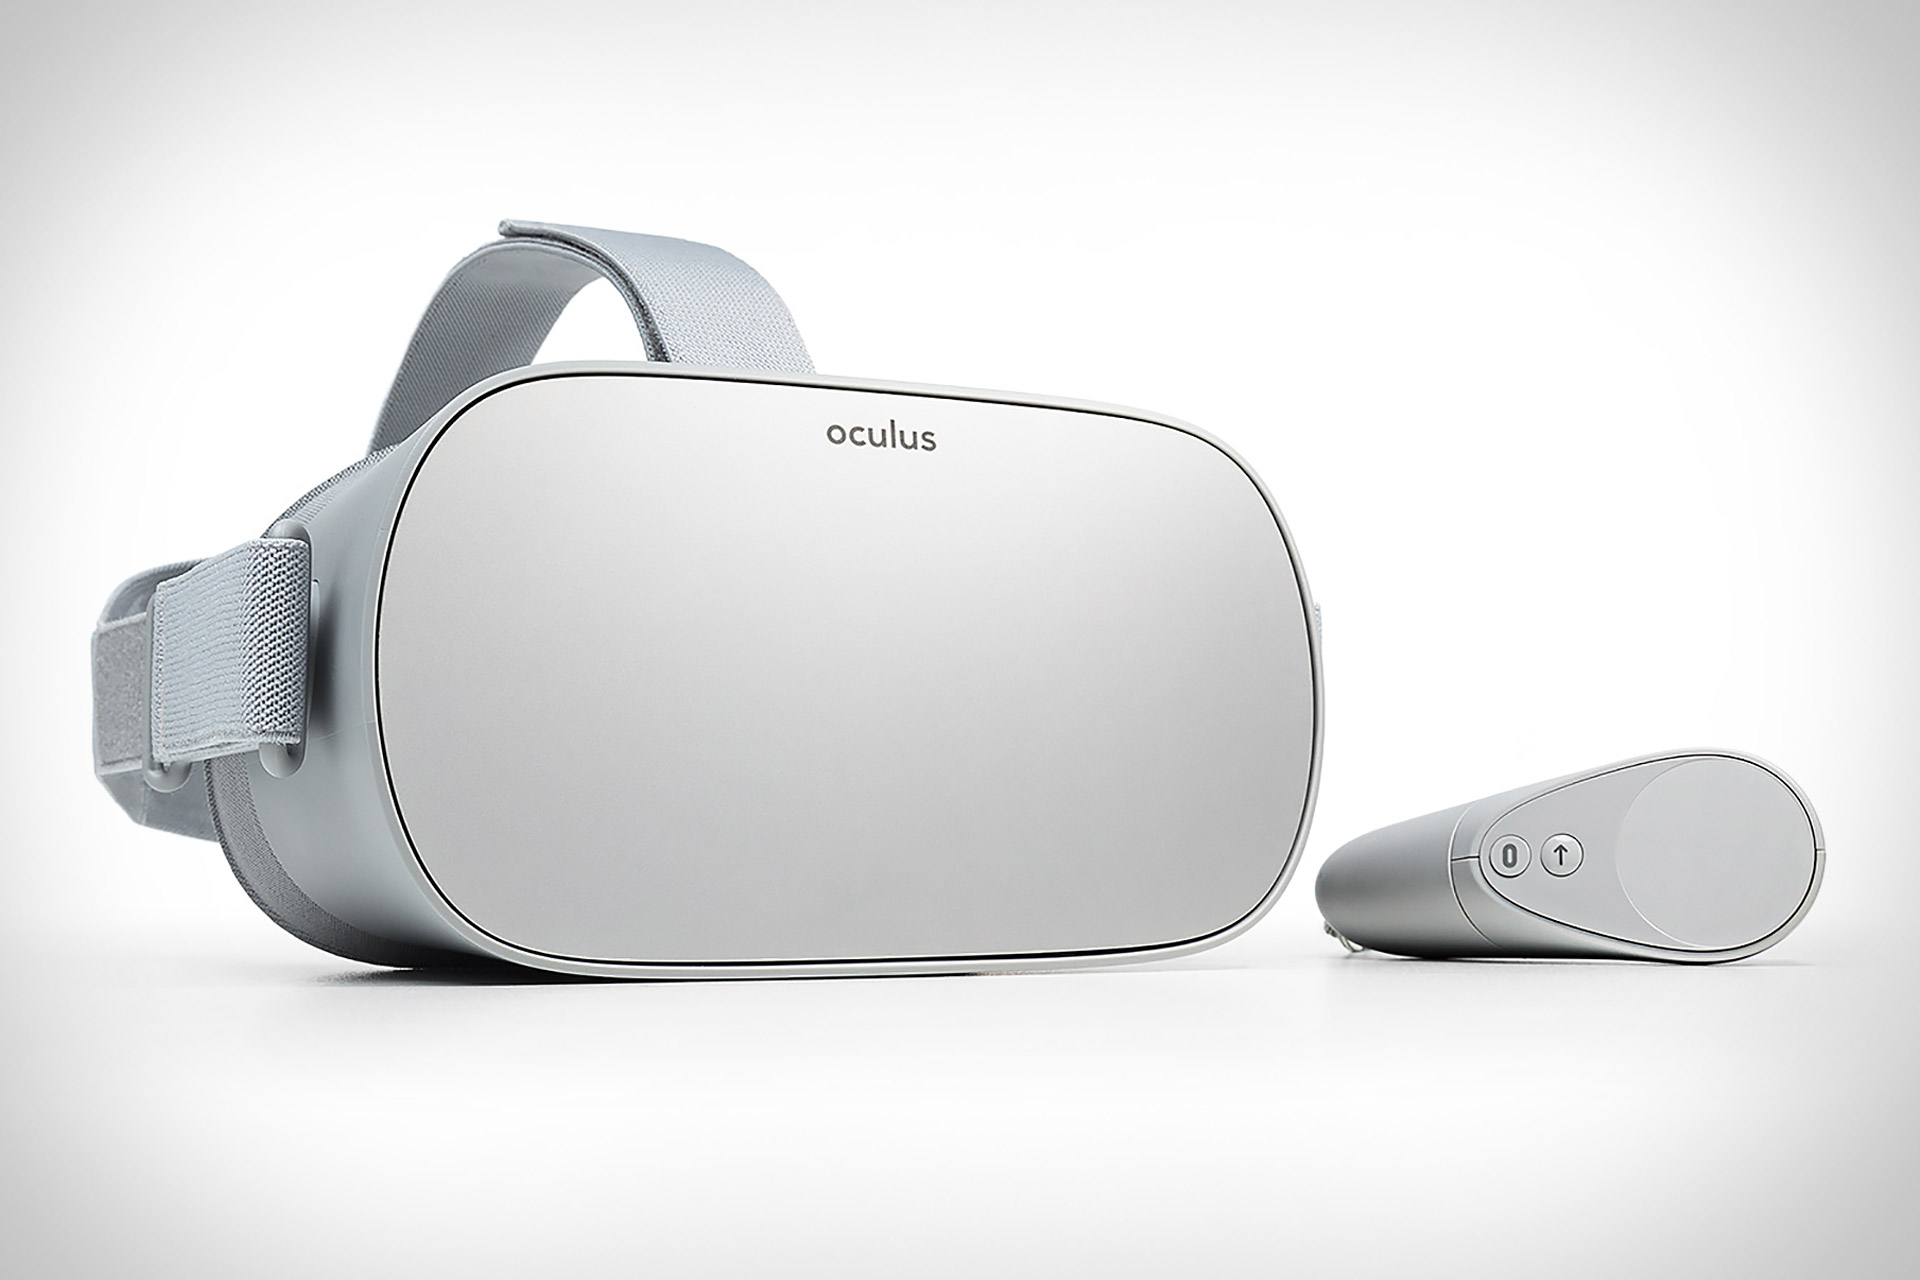 Uygun fiyatlı kablosuz VR başlığı Oculus GO tanıtıldı